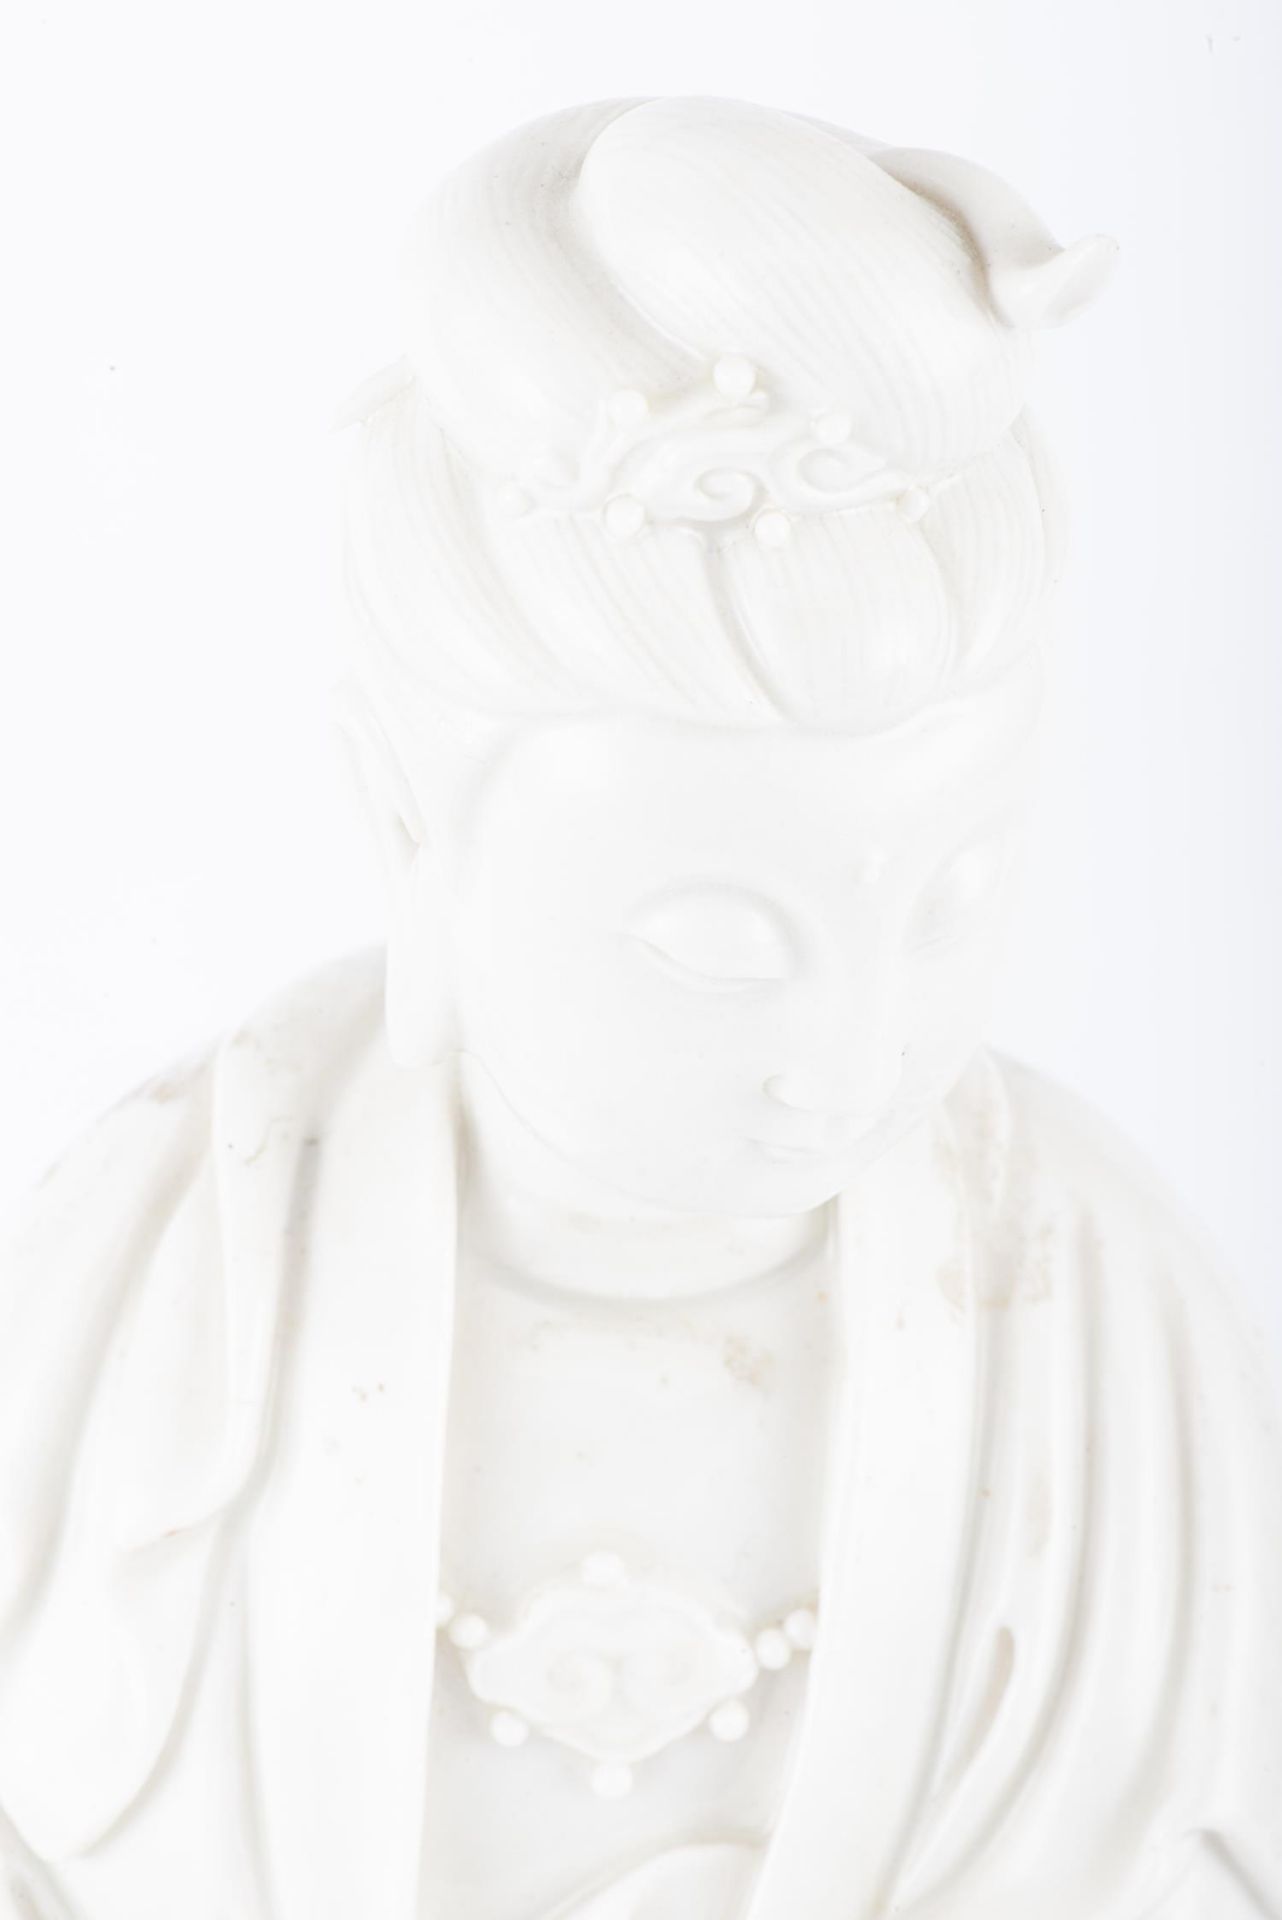 Guanyin en Blanc de Chine d'époque Qing - Image 11 of 17